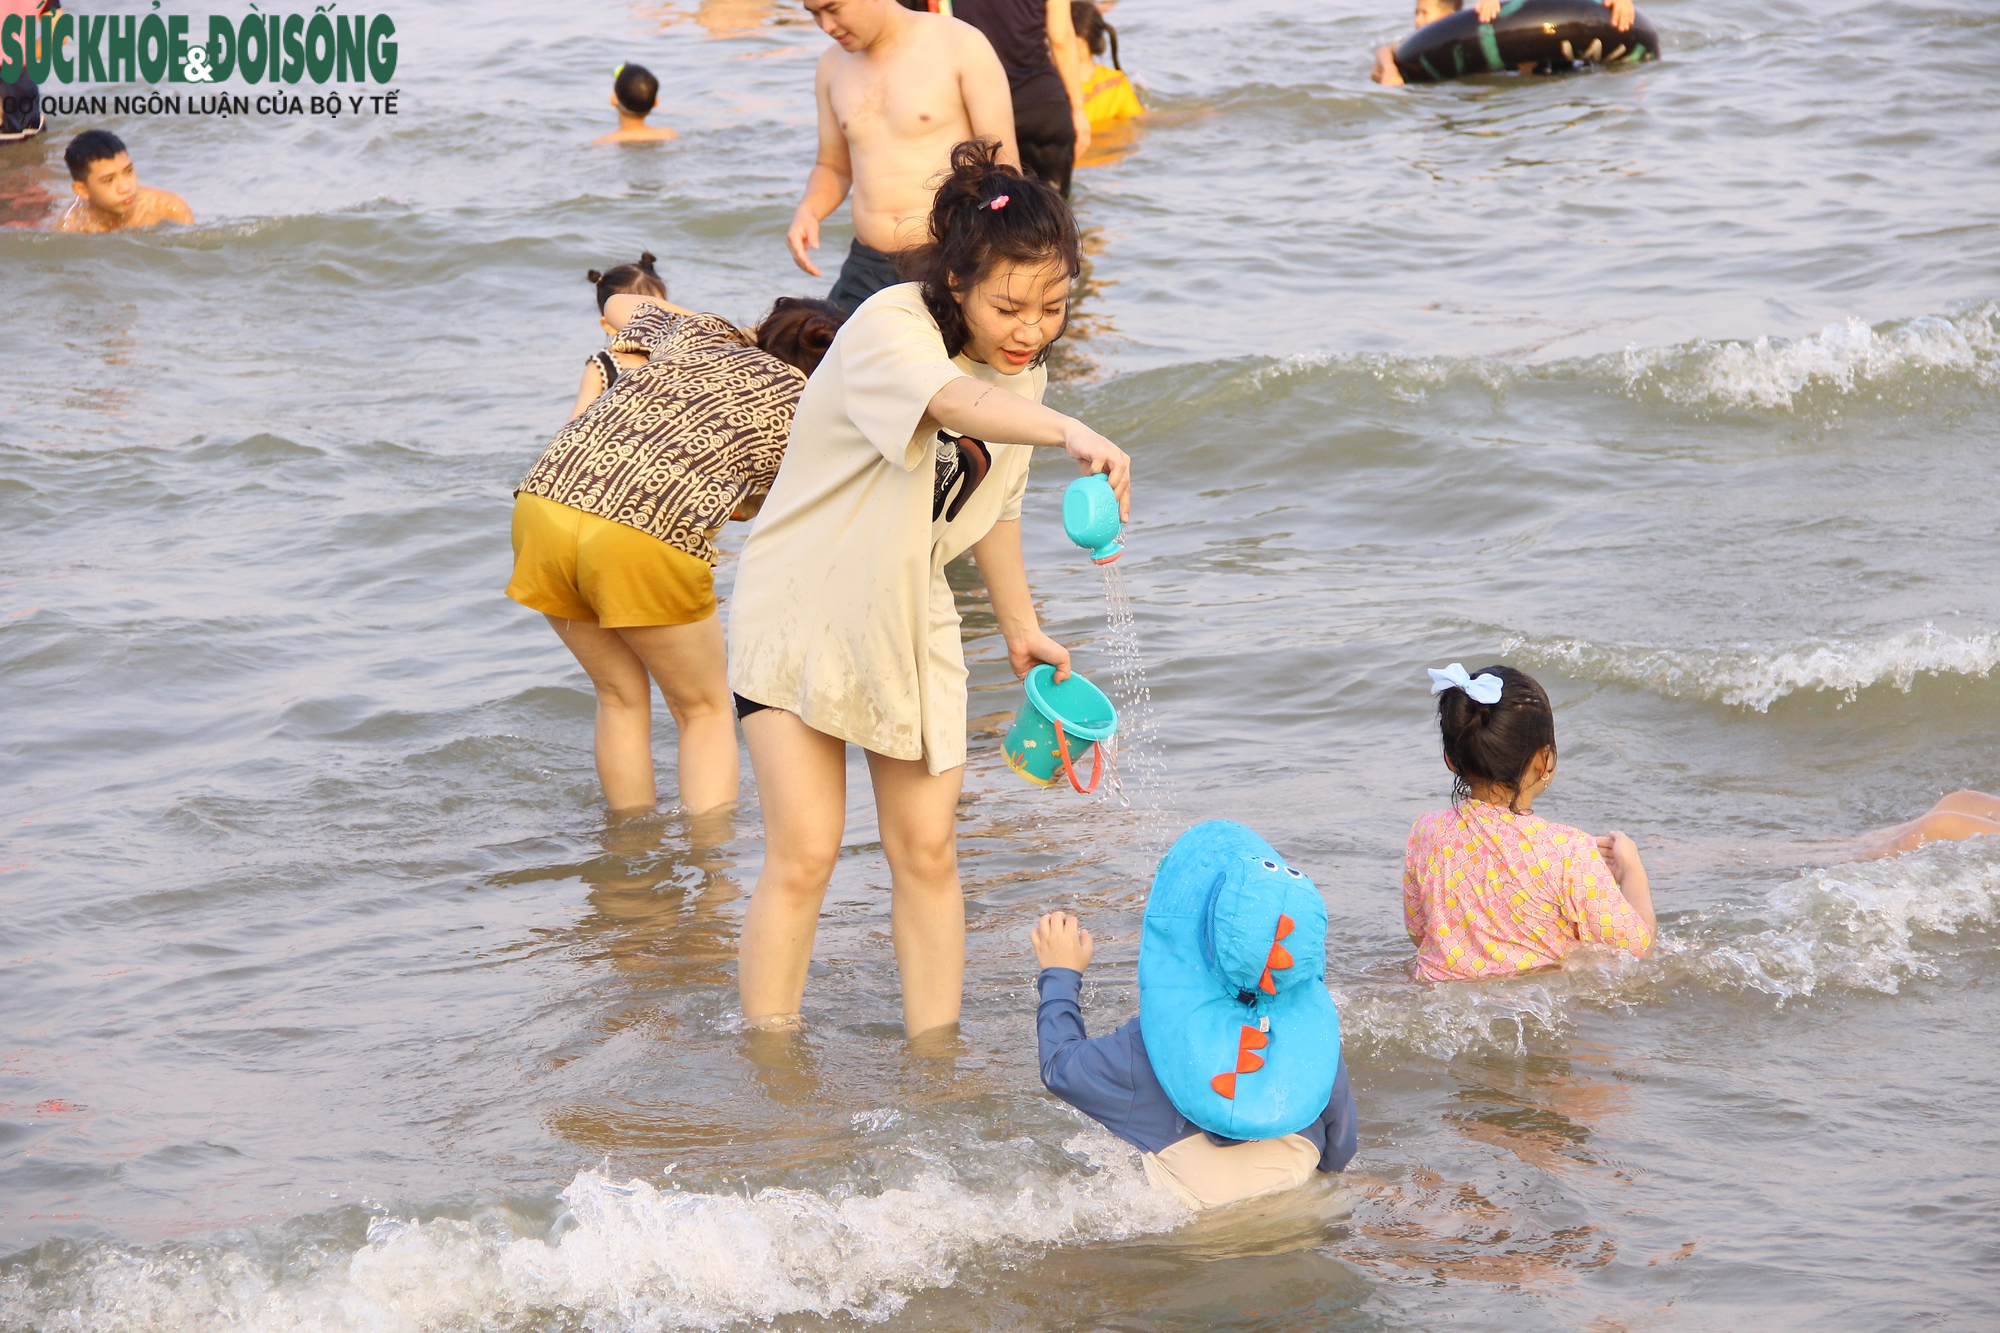 Bãi biển Sầm Sơn chật kín người dịp cuối tuần - Ảnh 8.